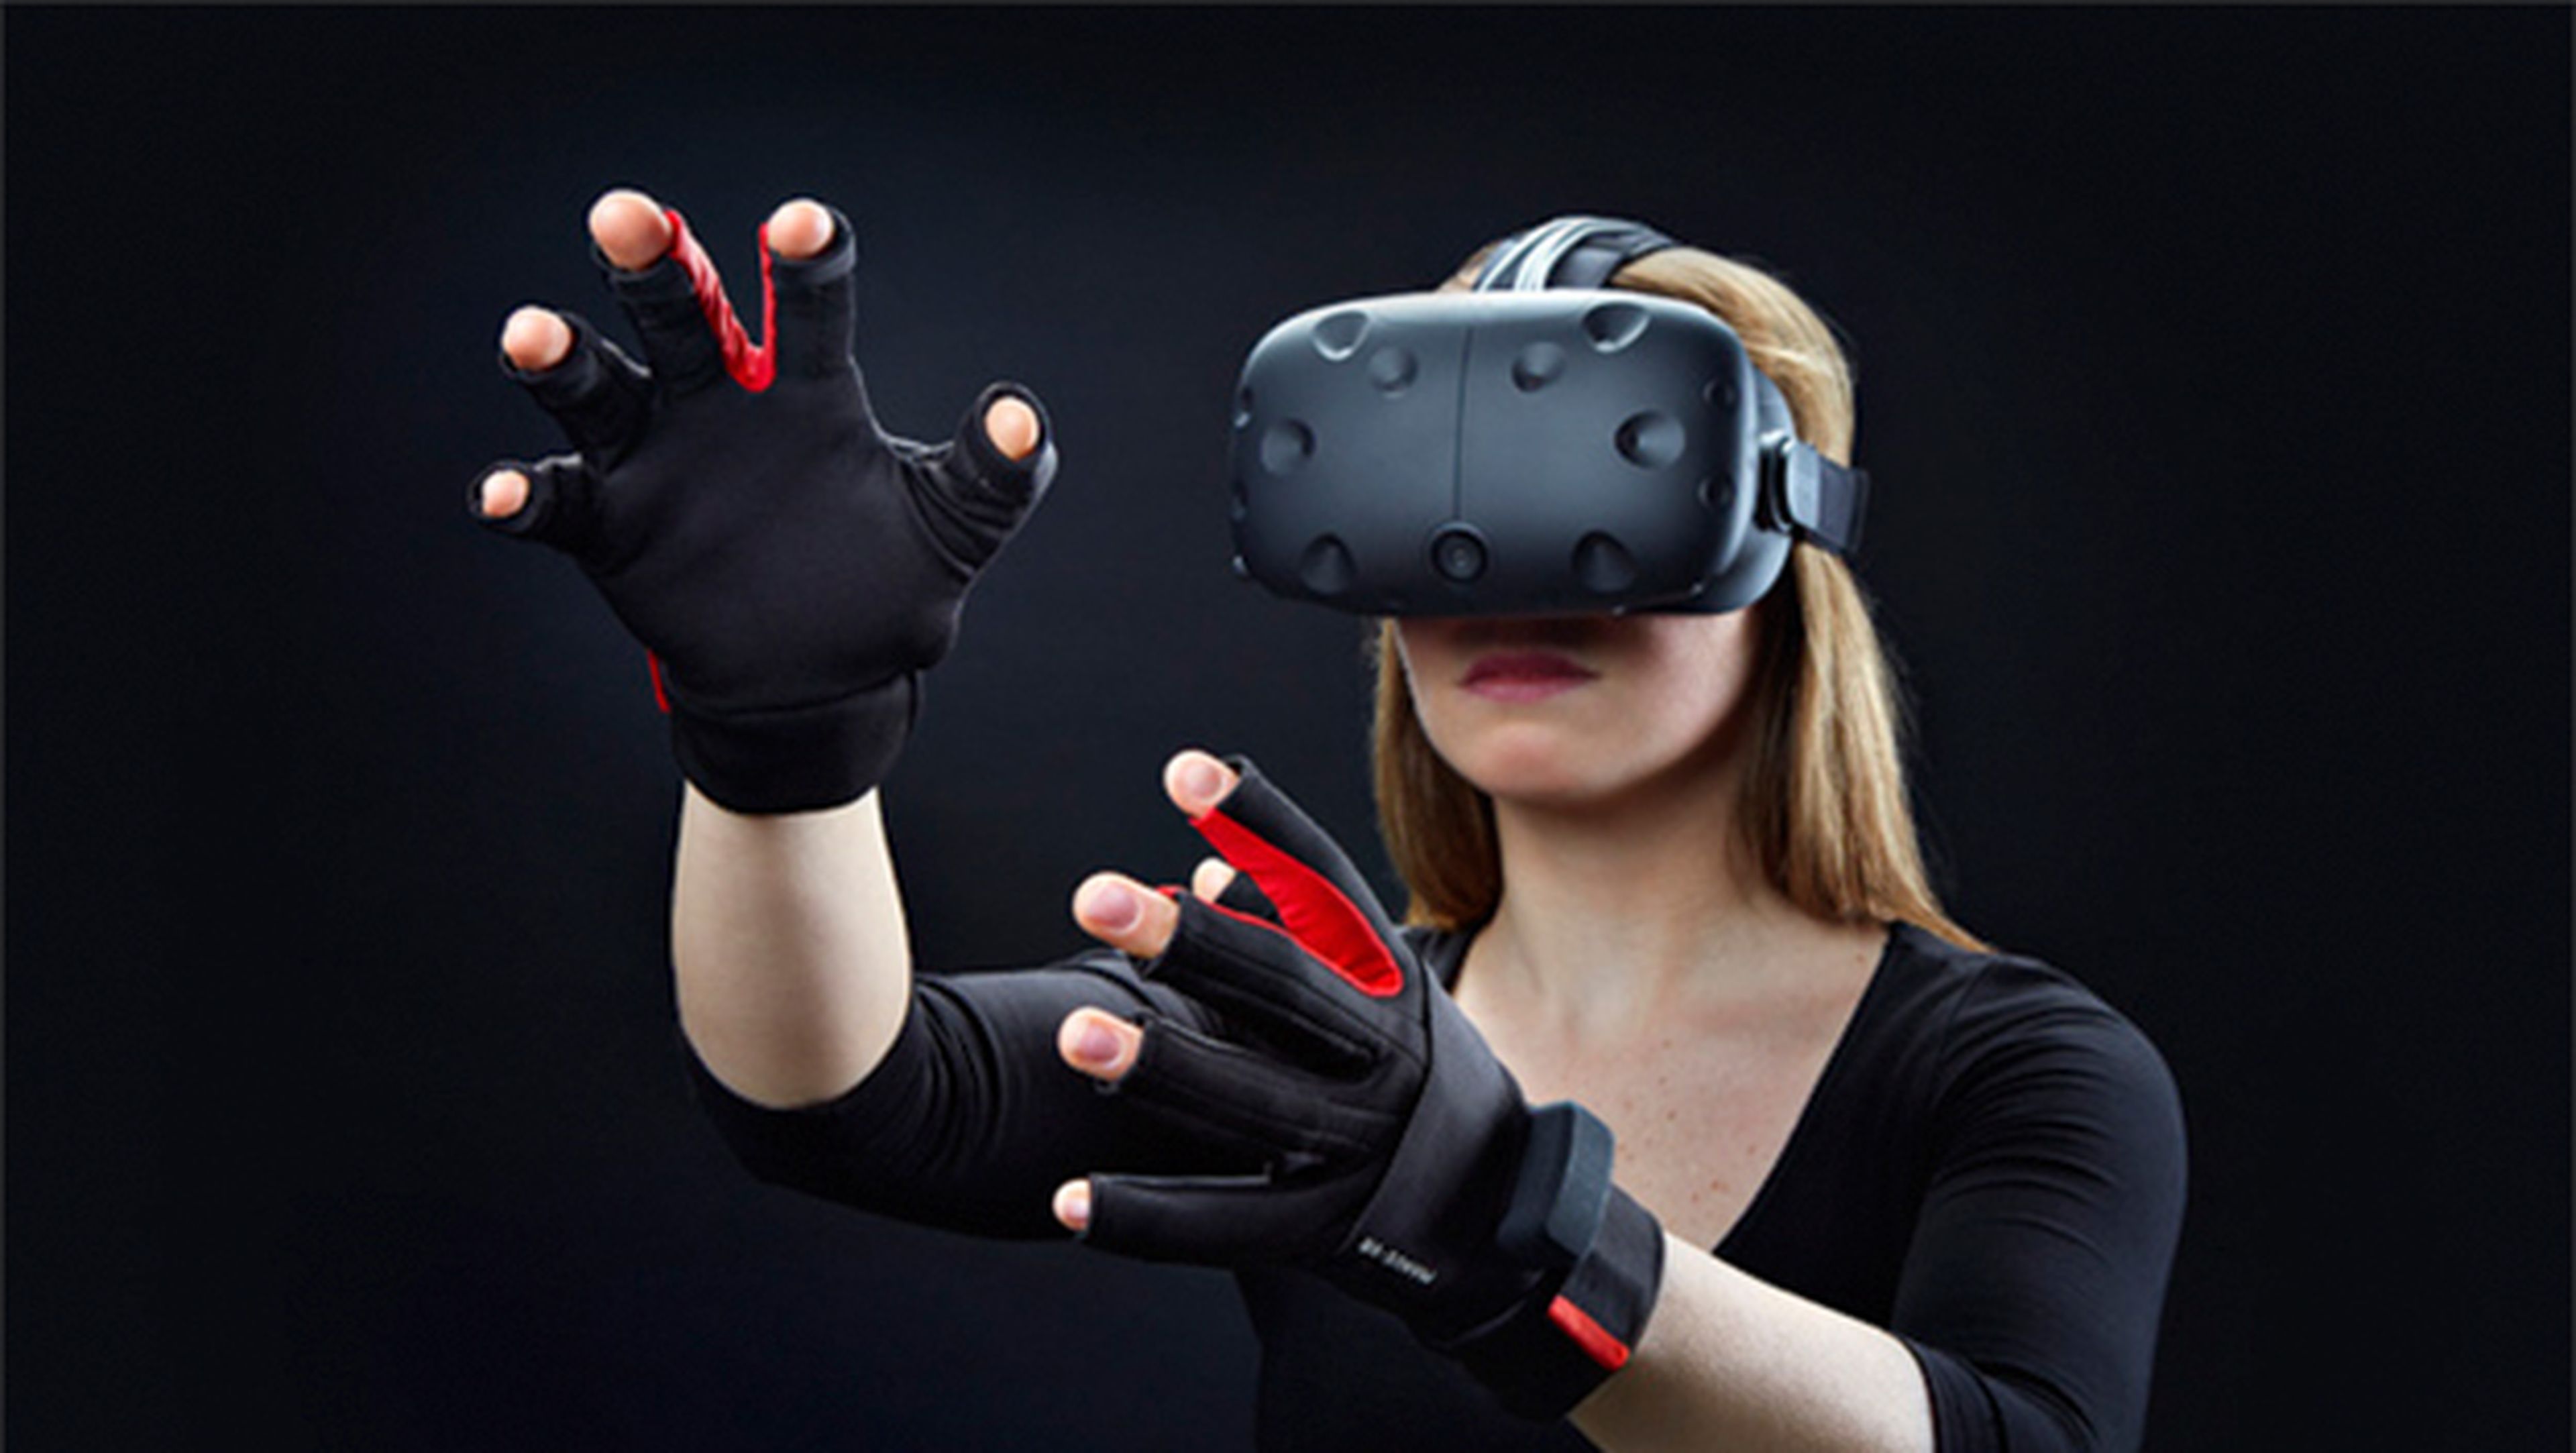 Equípate para la realidad virtual en eBay y no pagues de más